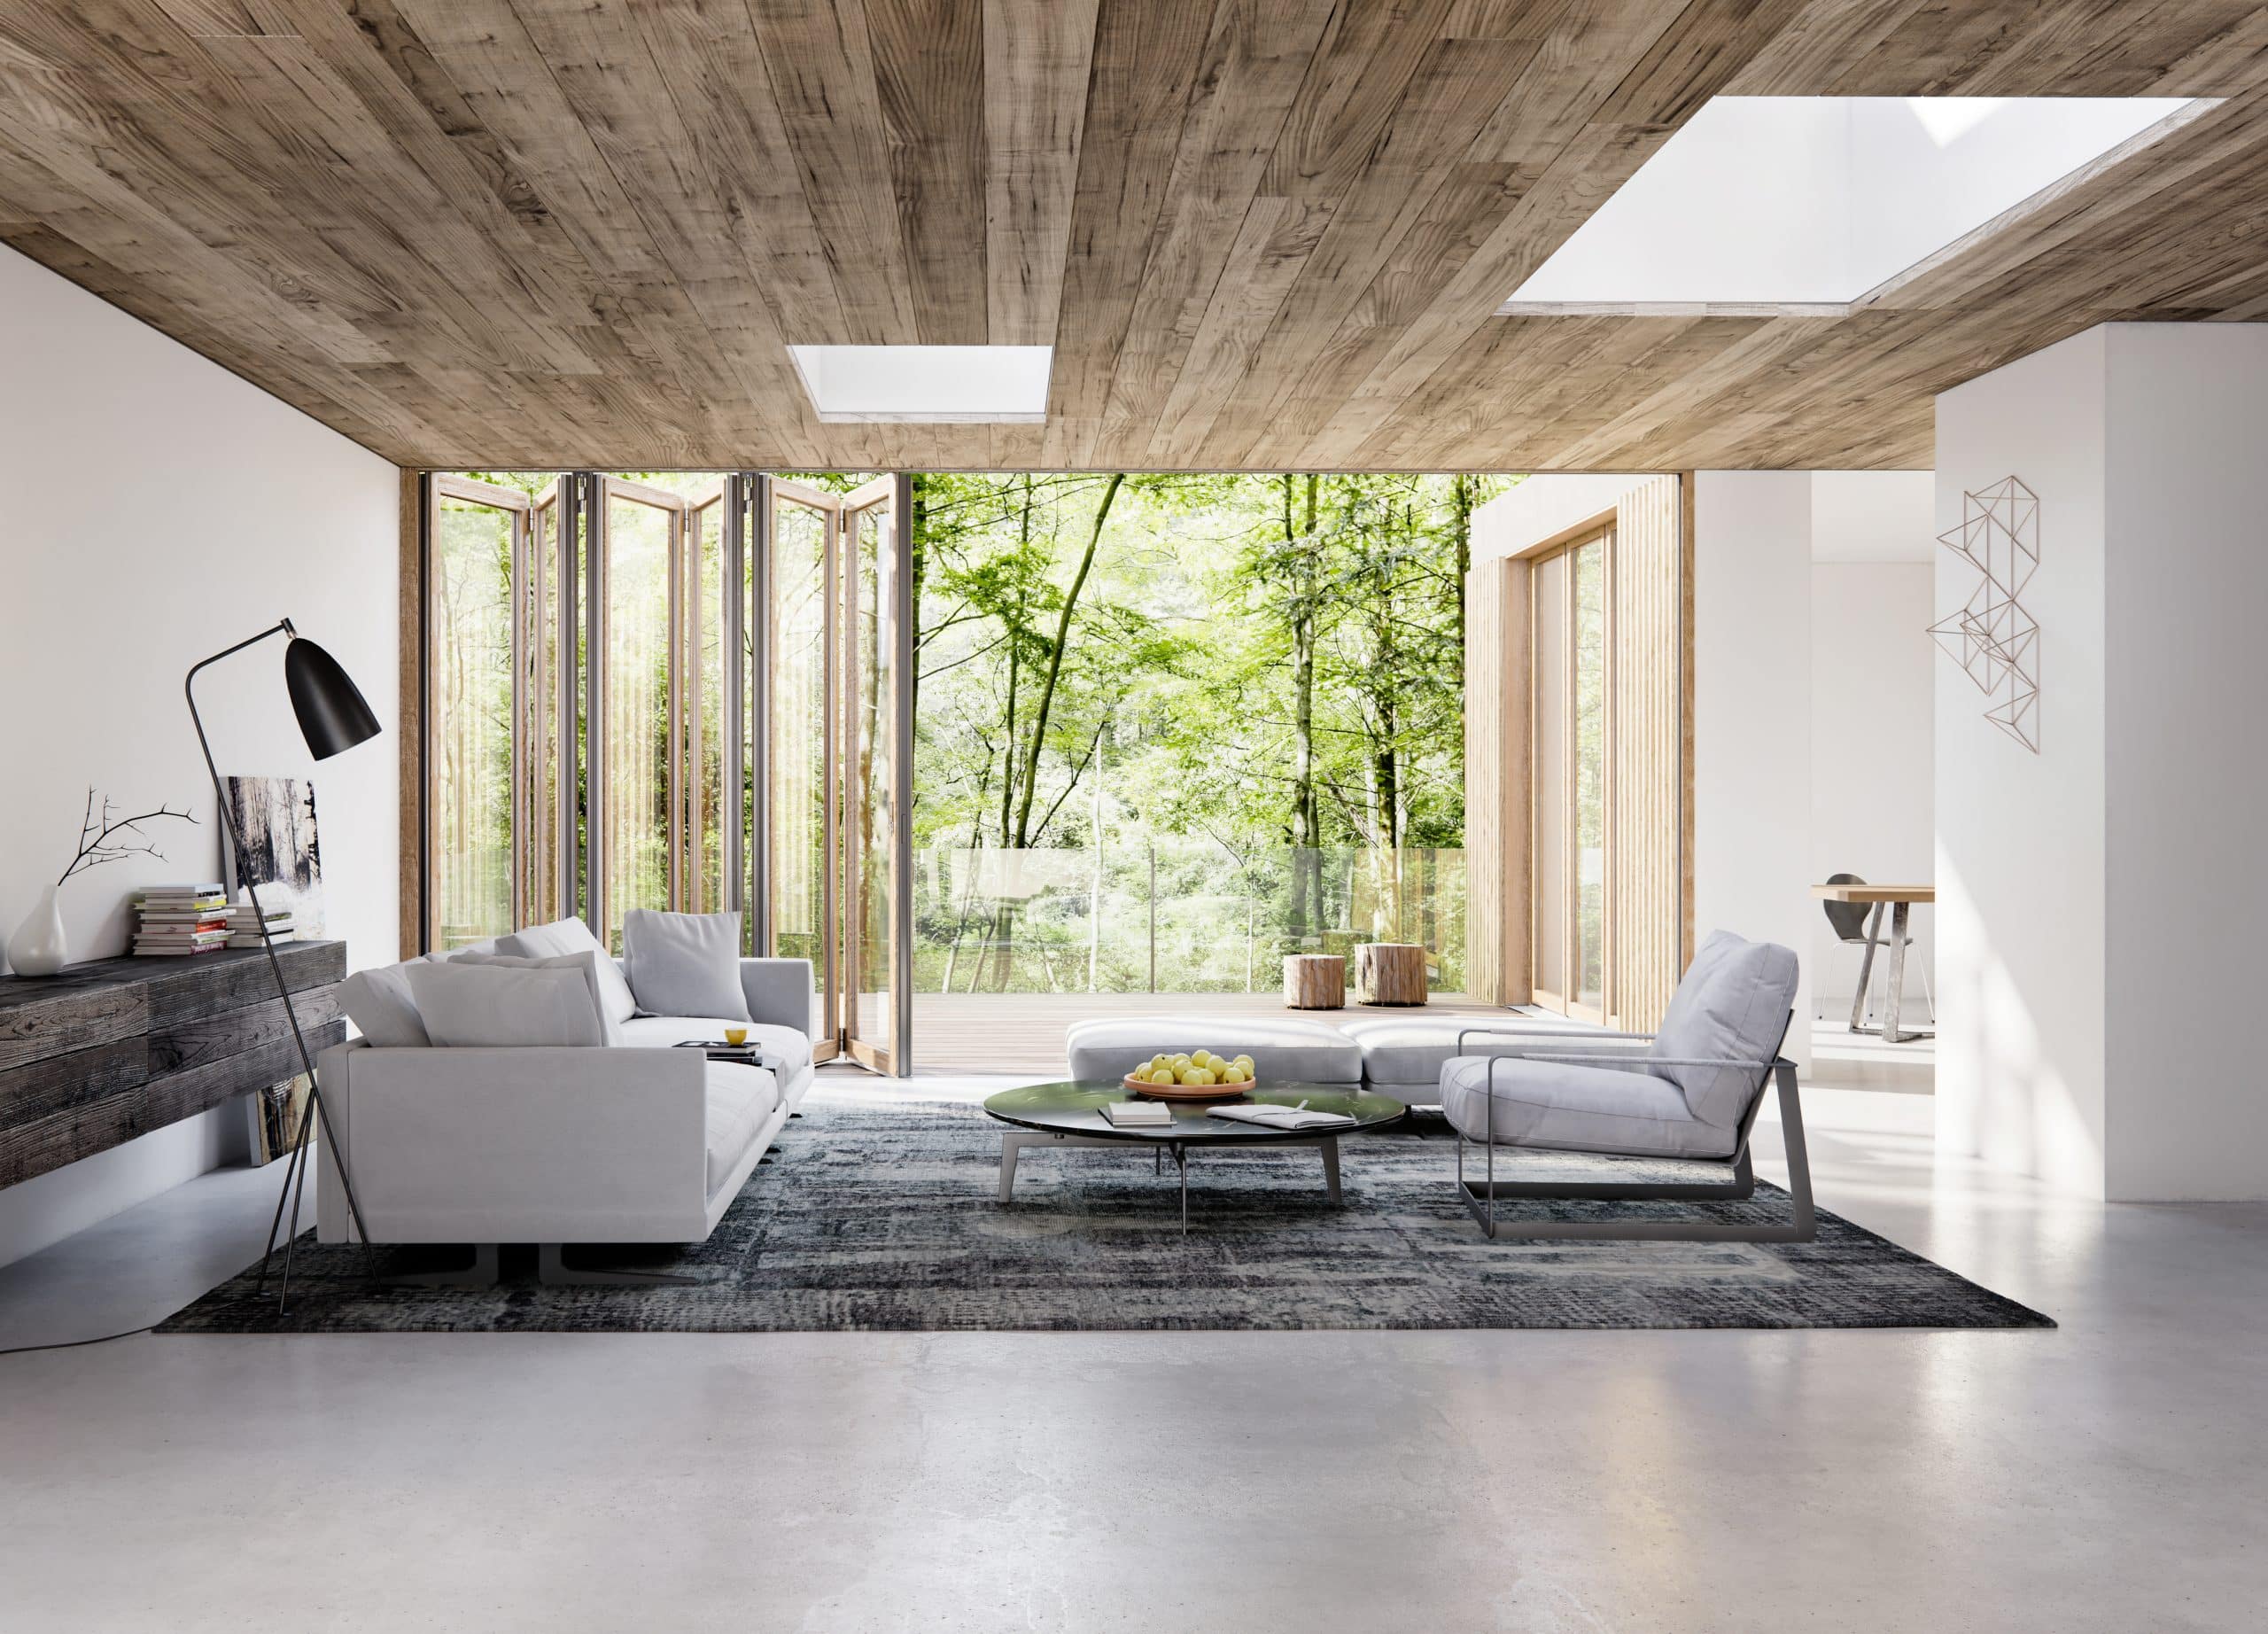 Solarlux zeig ein Wohnzimmer mit Sofa, schräger Lampe, Holzdecke, Fliesenboden vor einer Glasfaltwand die direkt auf eine Terrasse mit Glasgeländer führt.